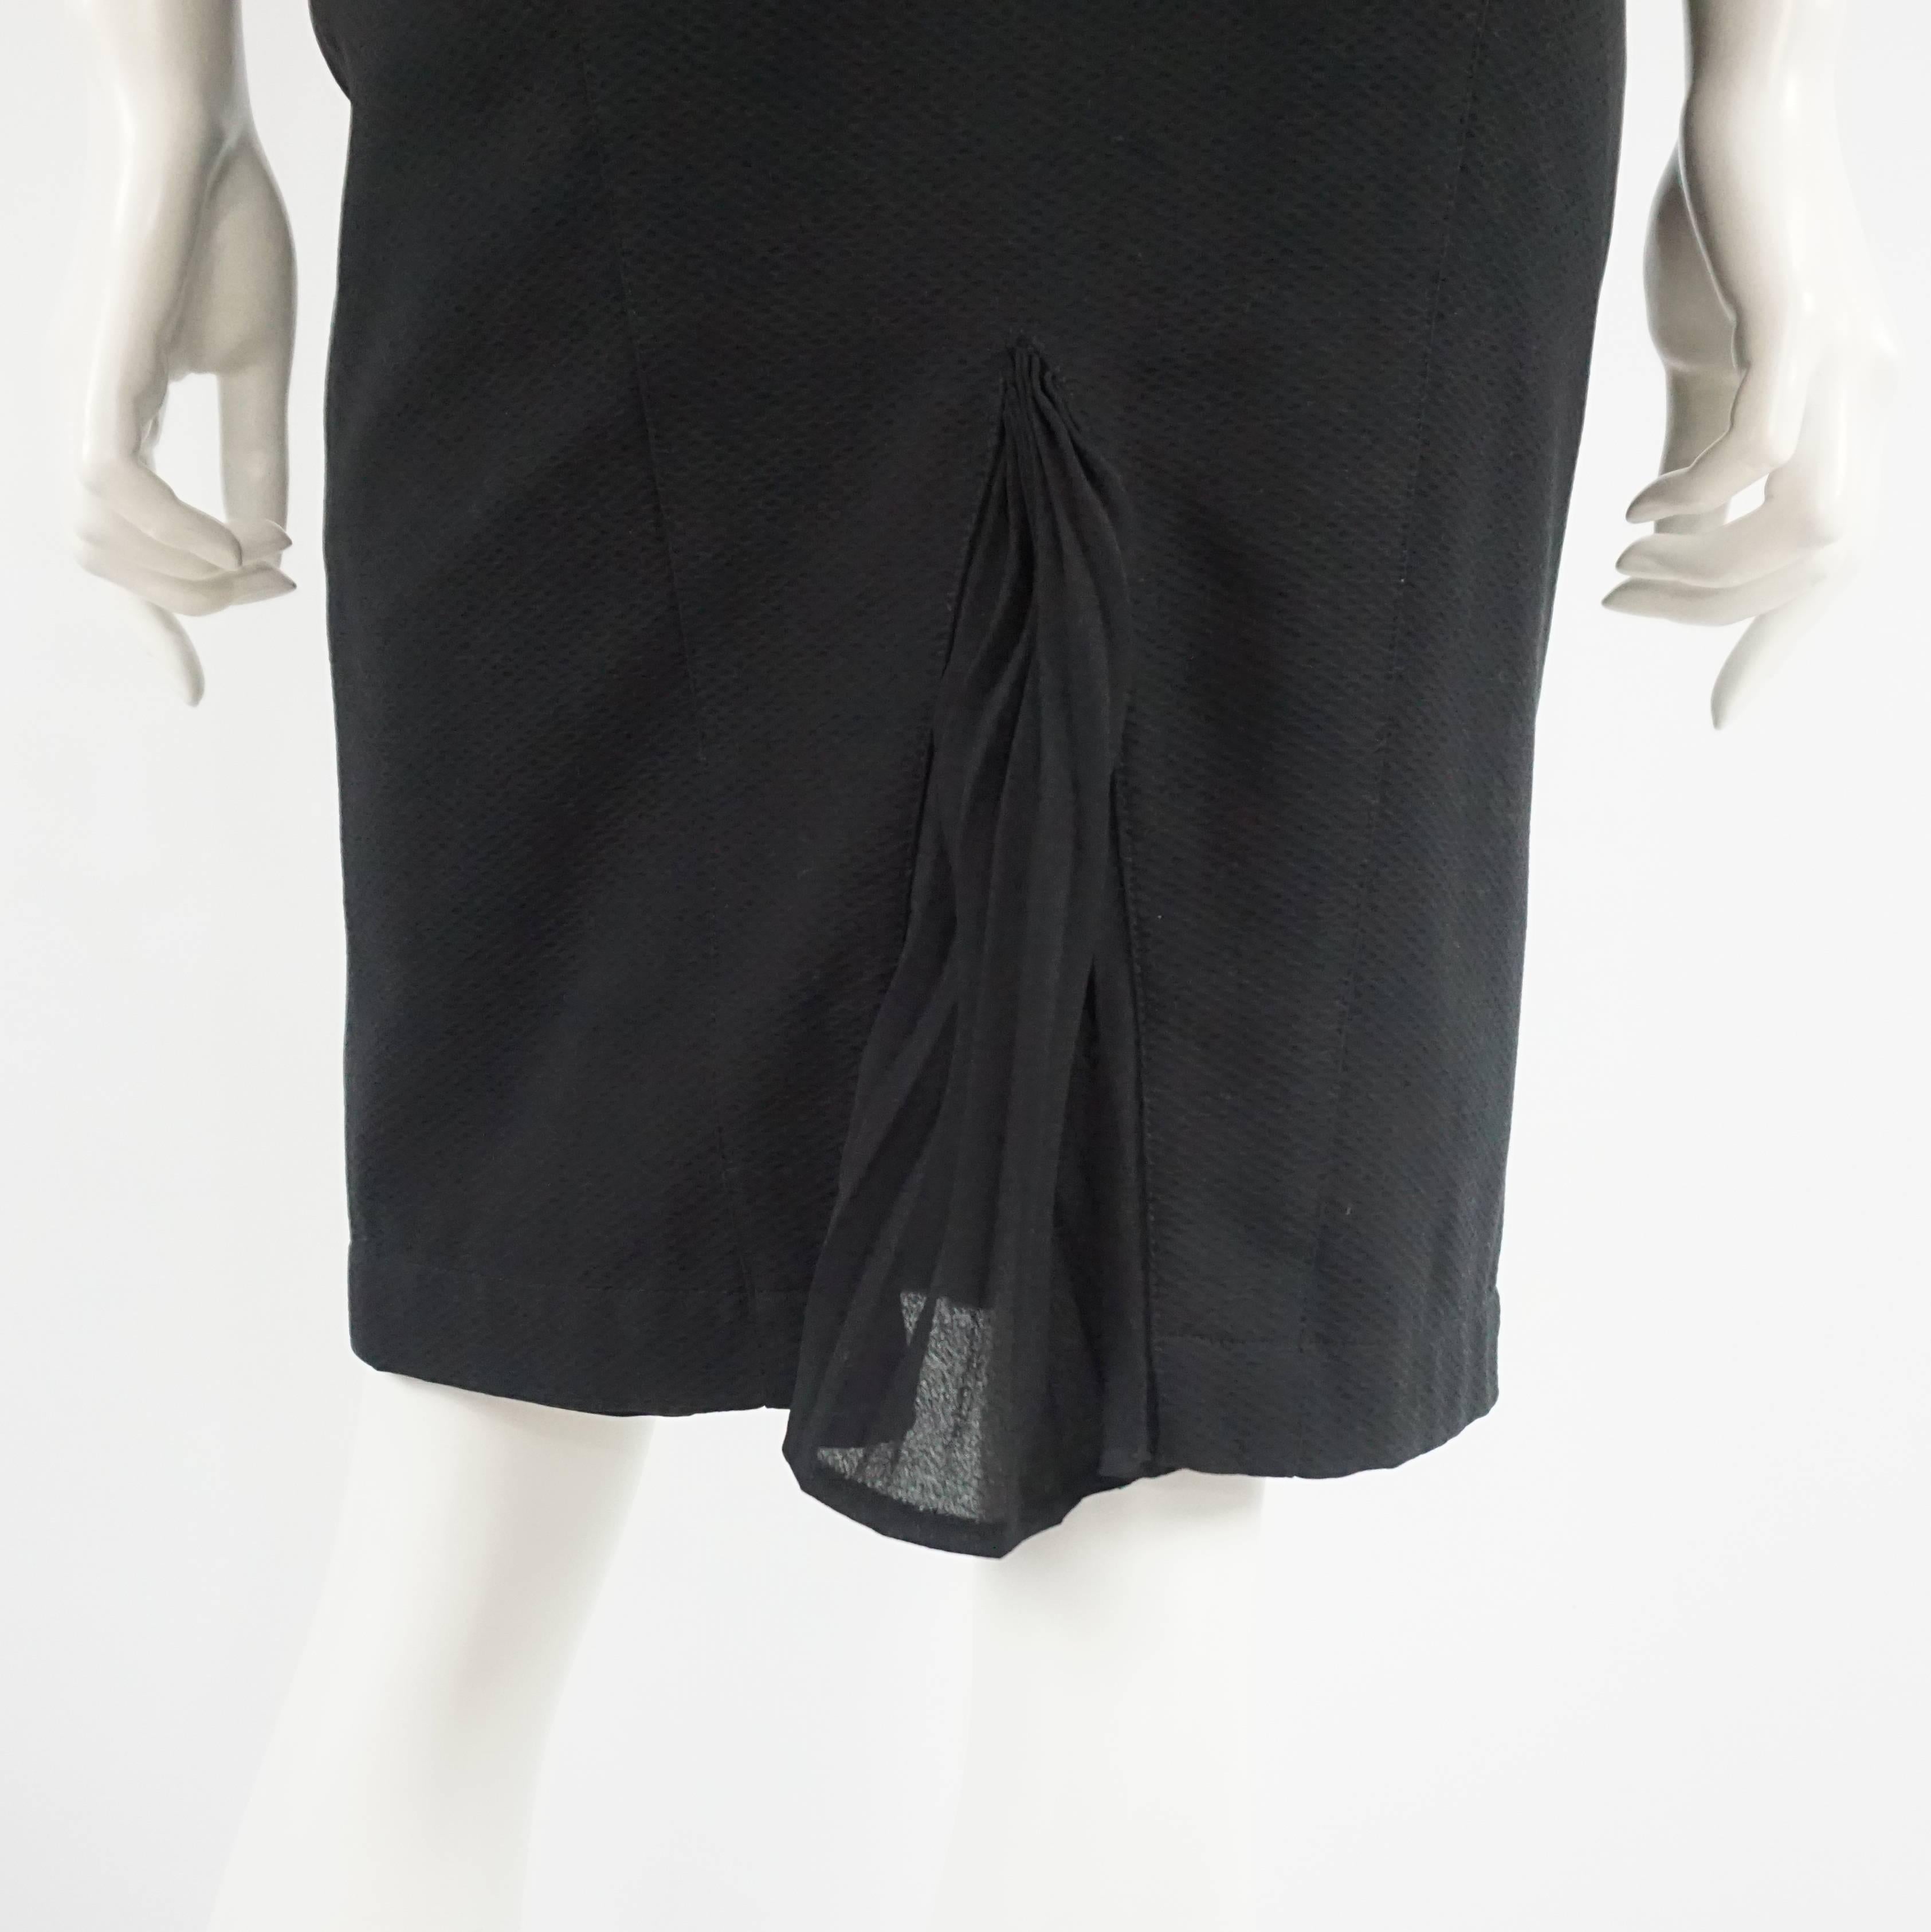 Thierry Mugler Black Pique Dress - 40 - Circa 90's 2